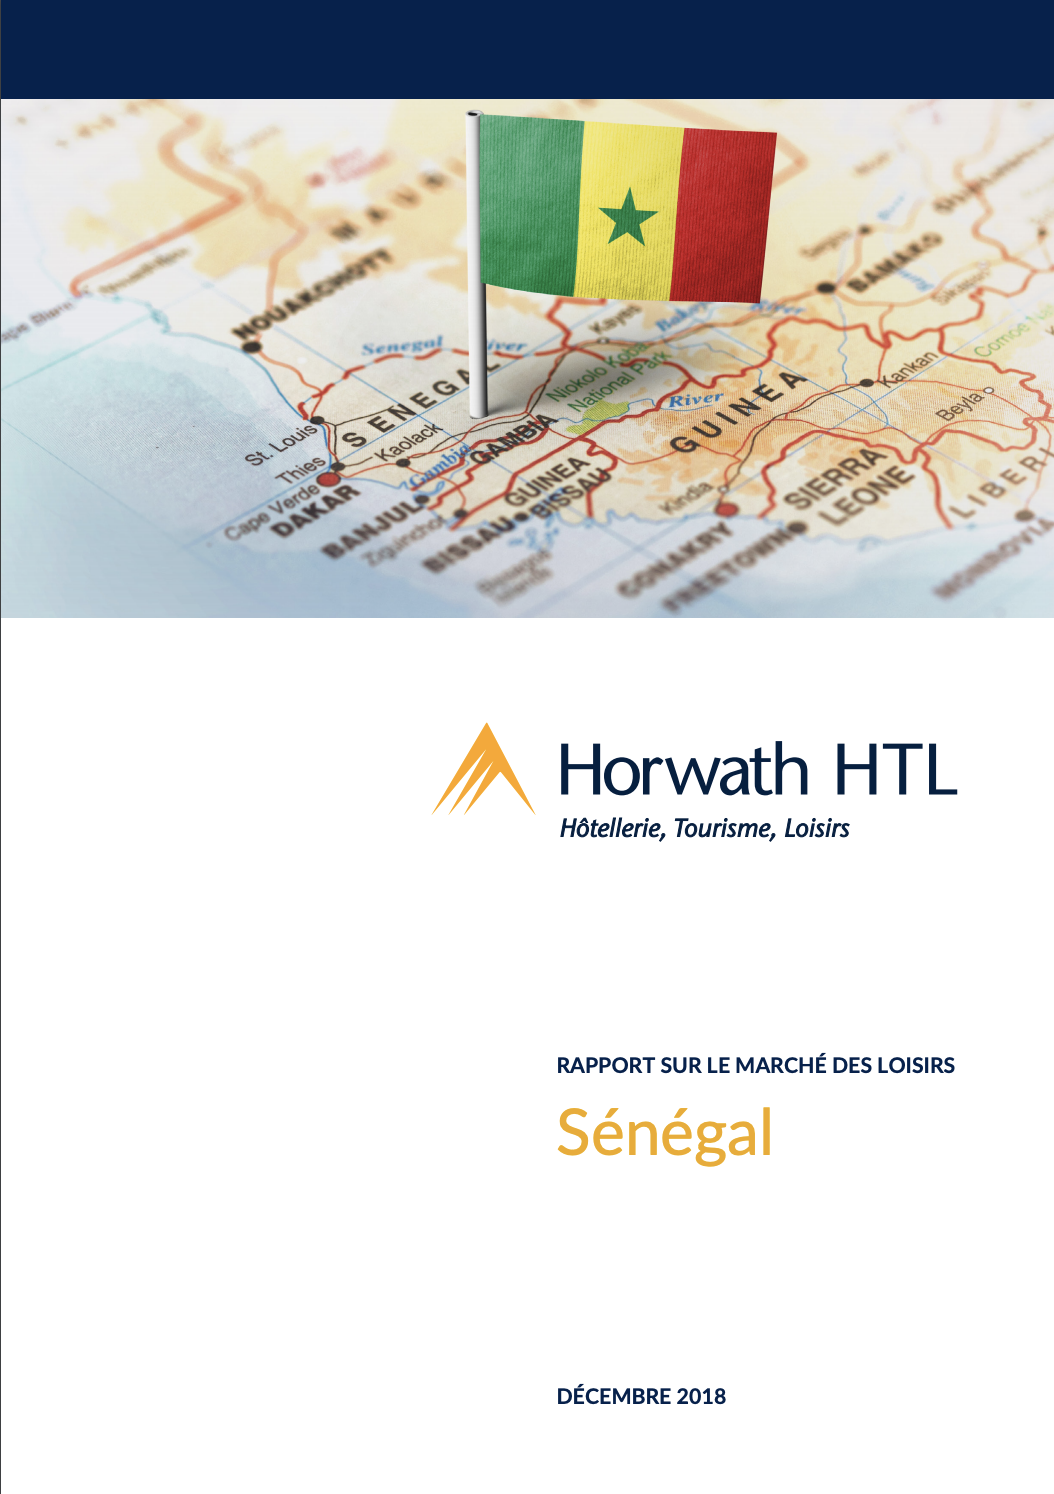 Market Report: Sénégal